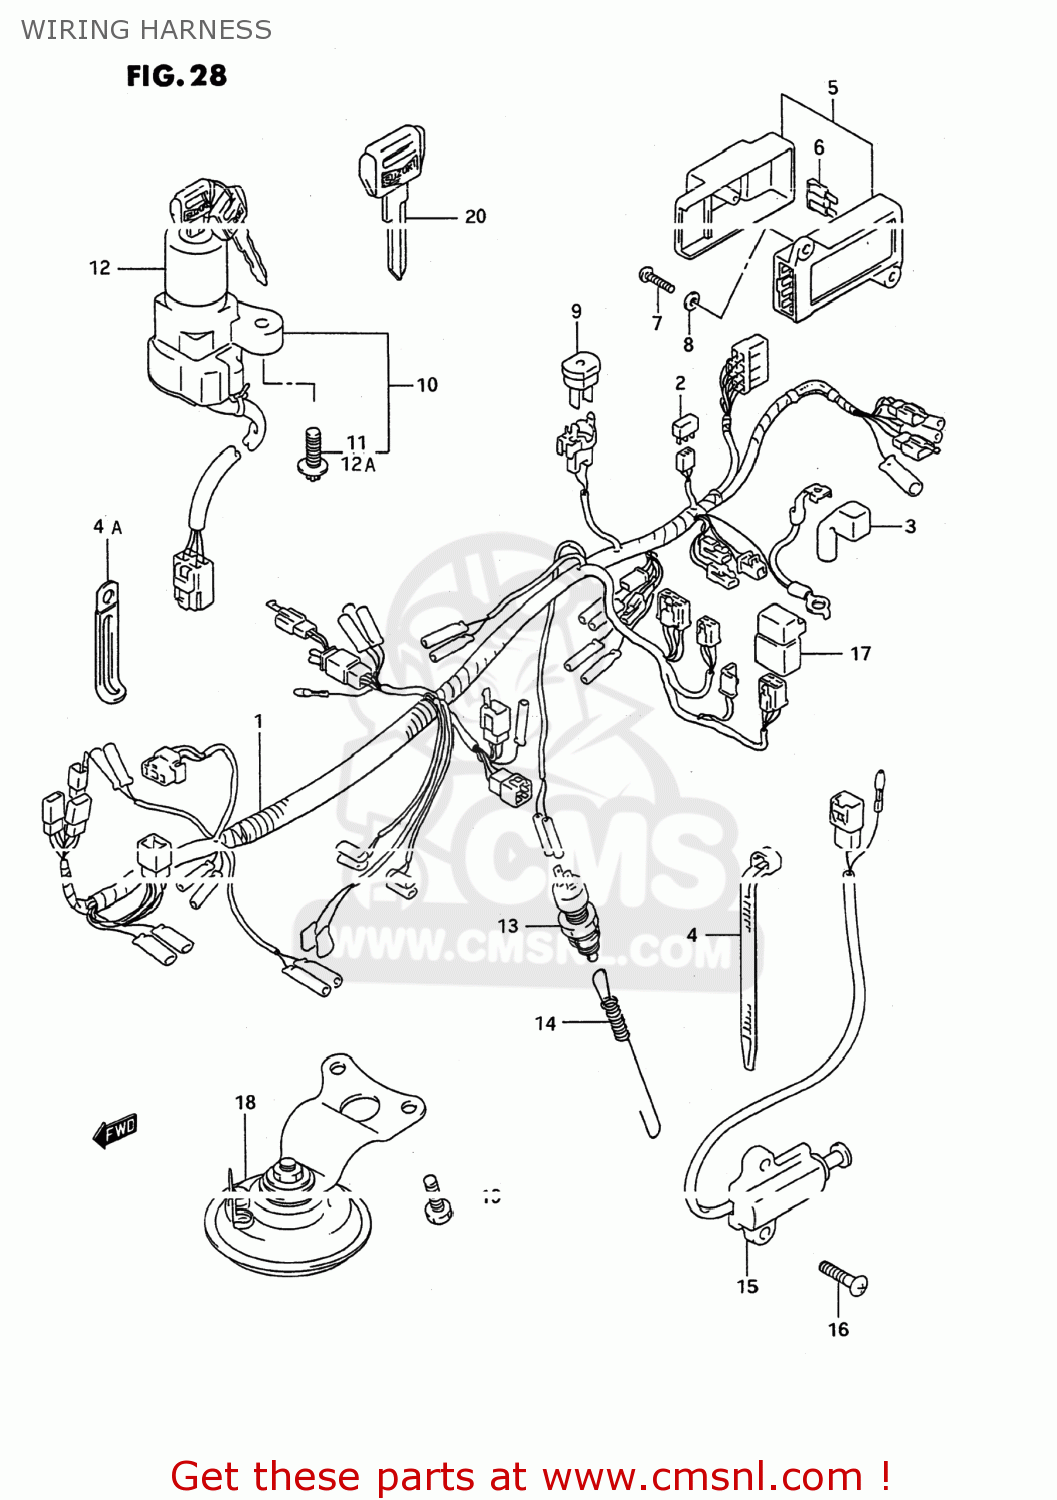 Suzuki Gsx600f Wiring Diagram